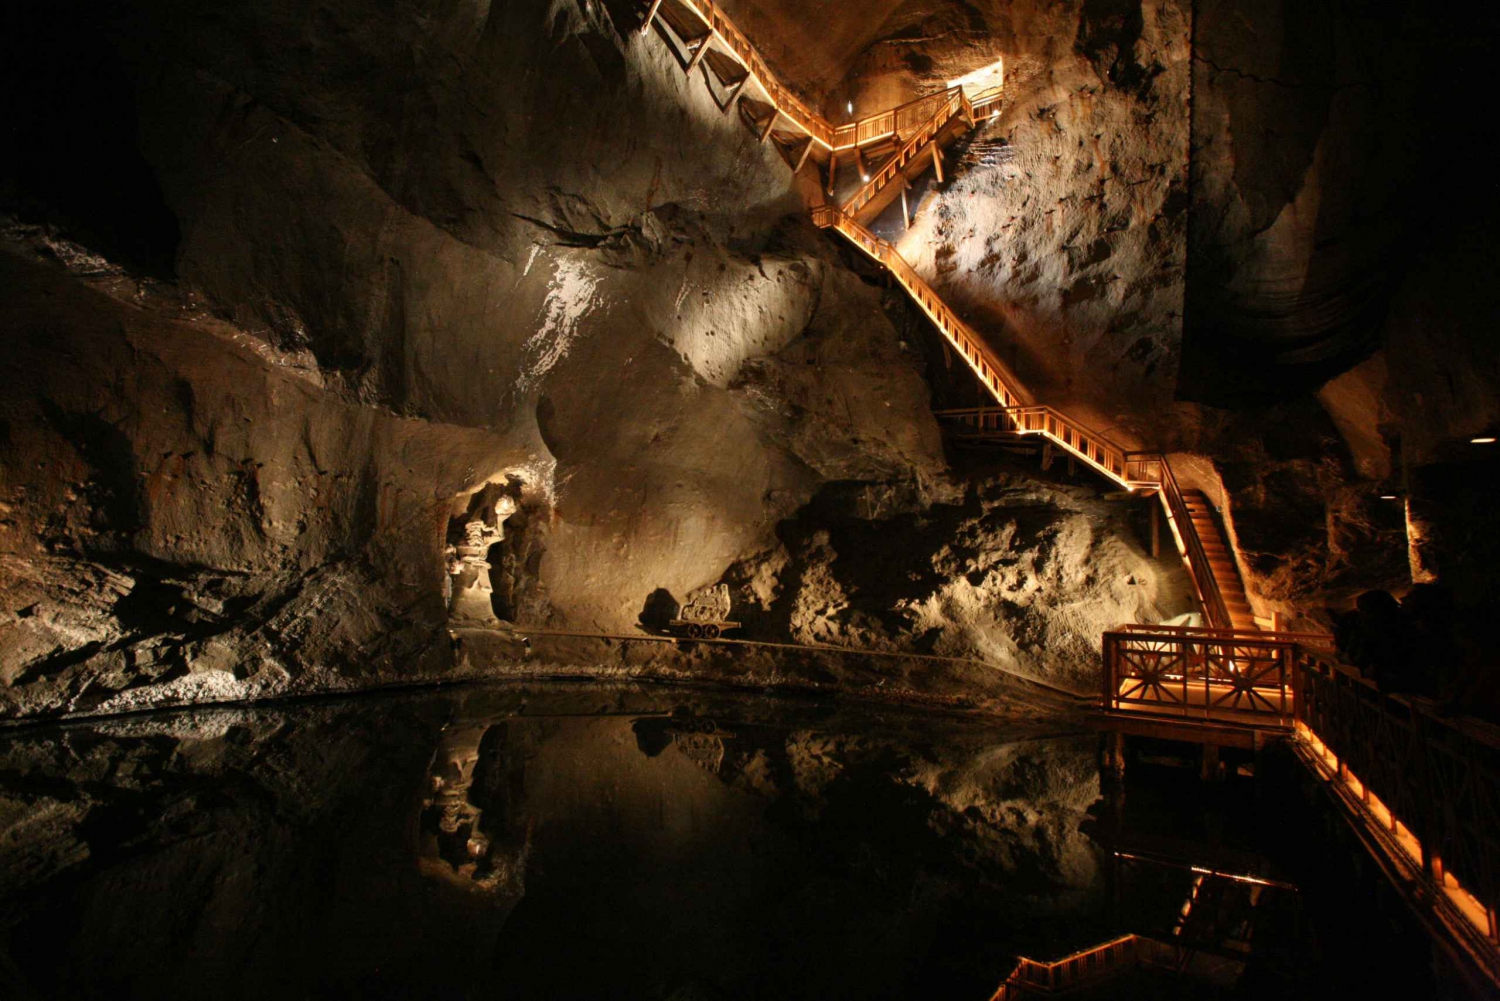 Wieliczka Salt Mine: Skip-the-Line Ticket with Guide